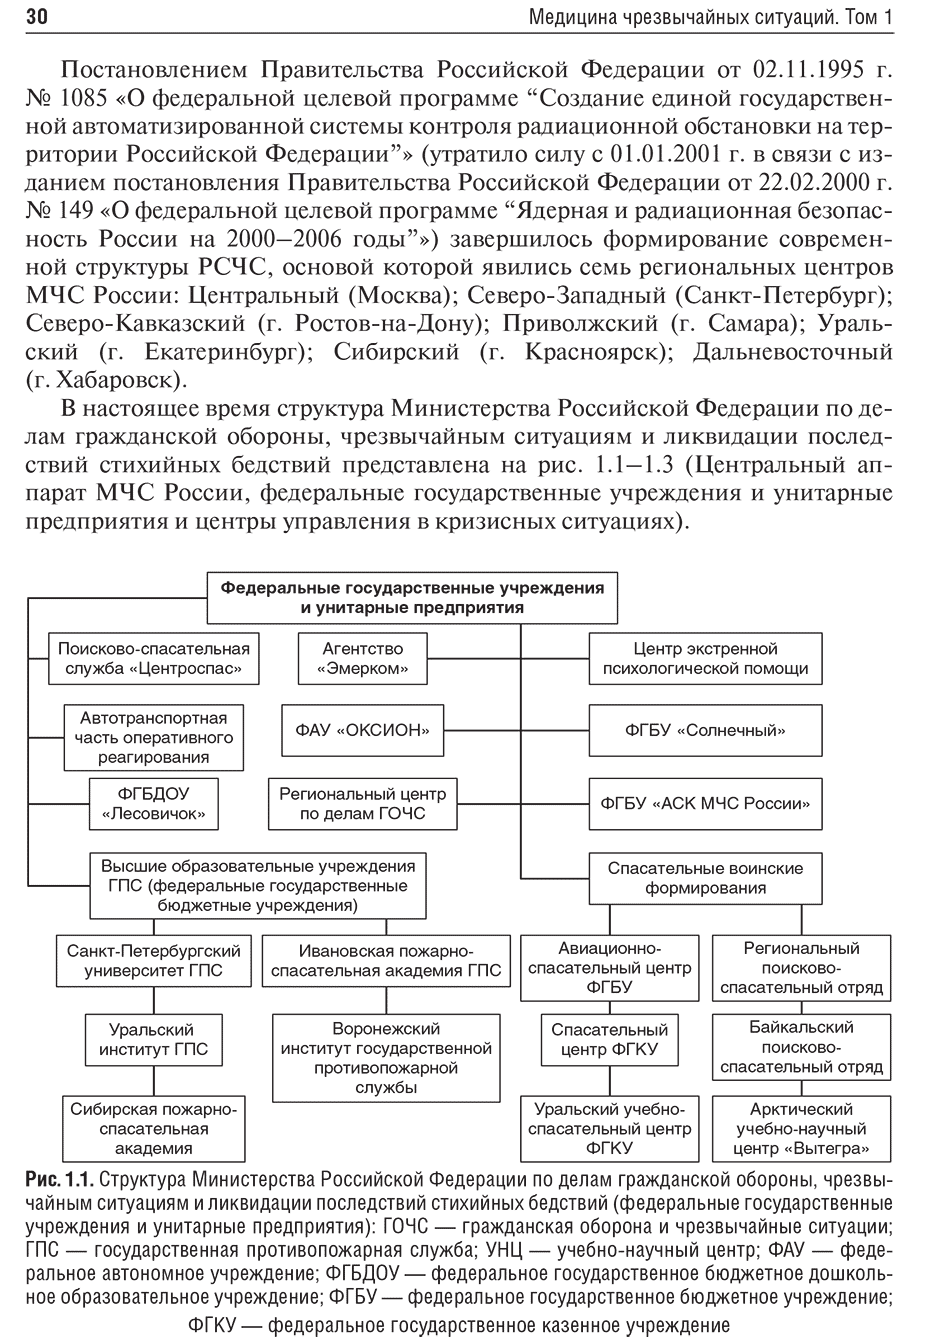 Рис. 1.1. Структура Министерства Российской Федерации по делам гражданской обороны